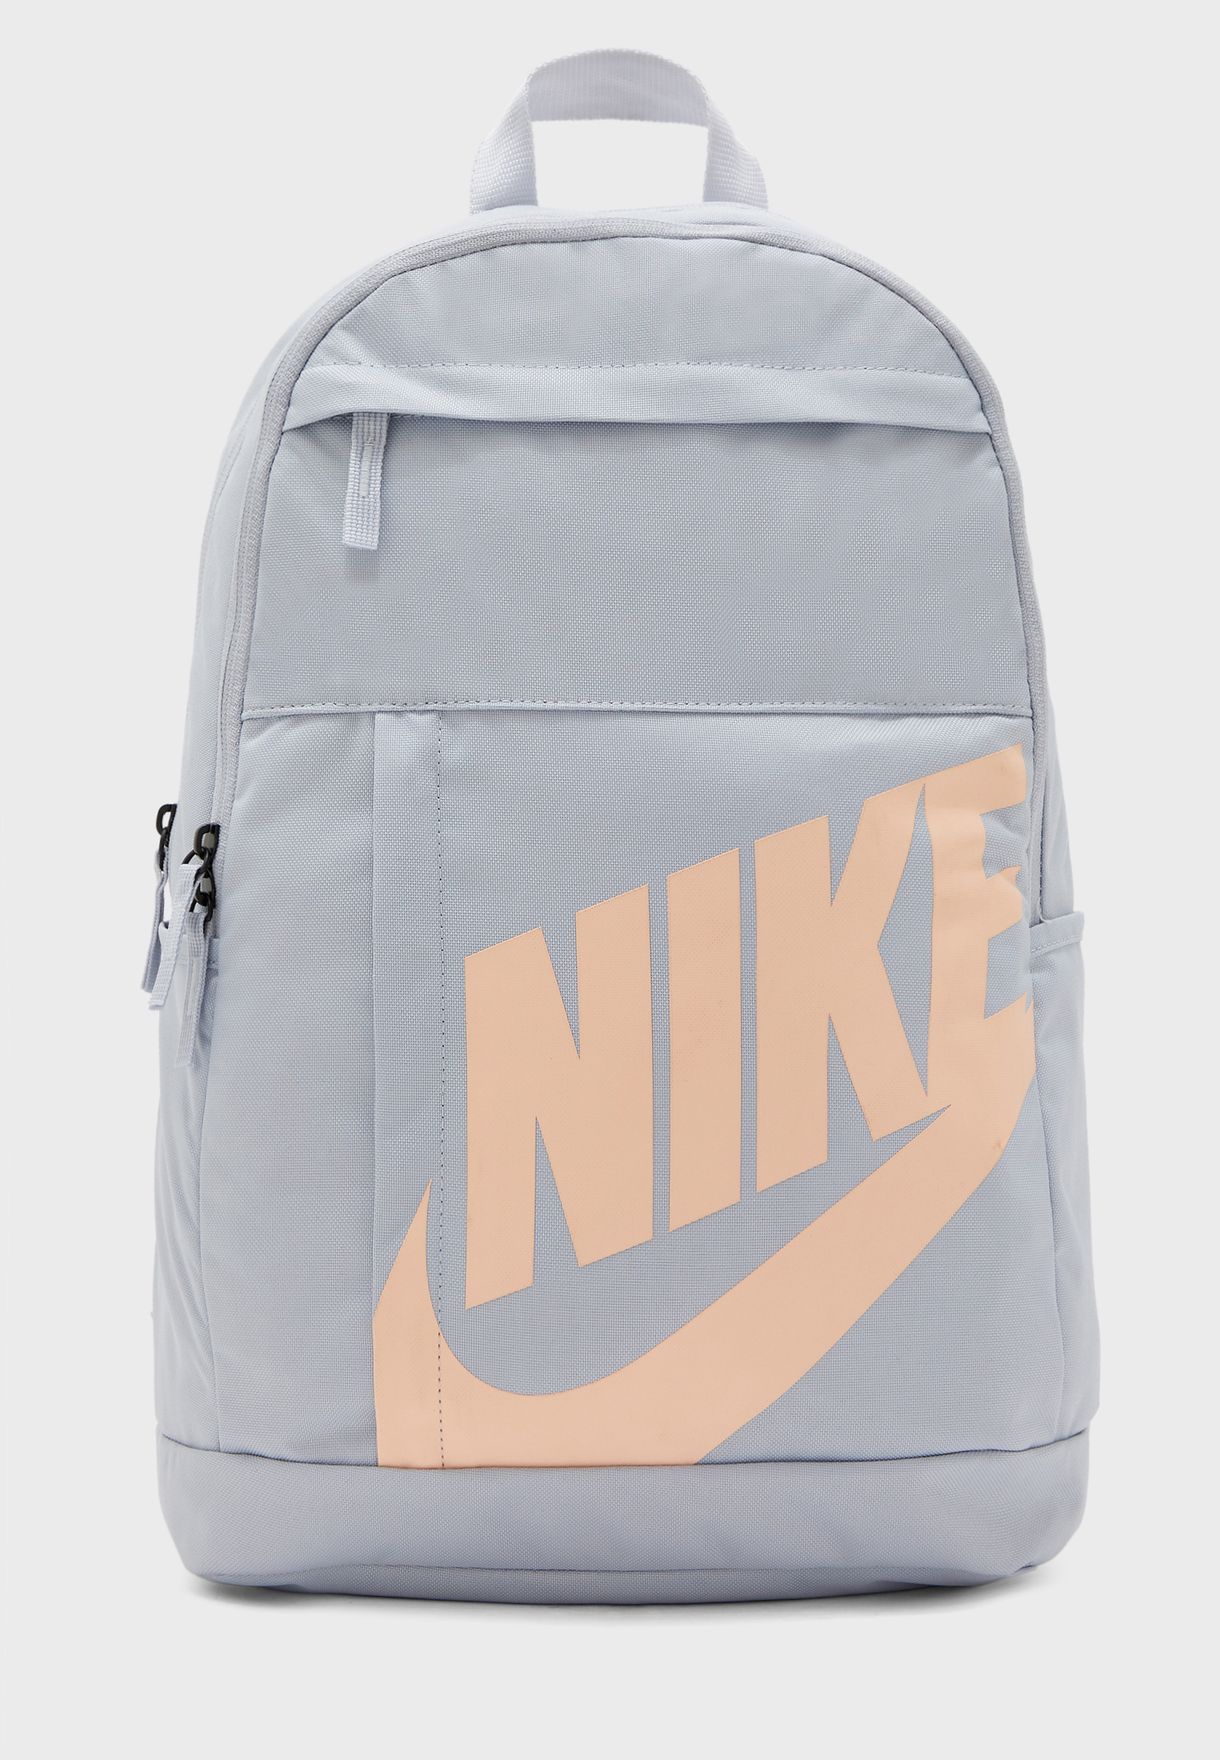 nike elemental 2.0 backpack size